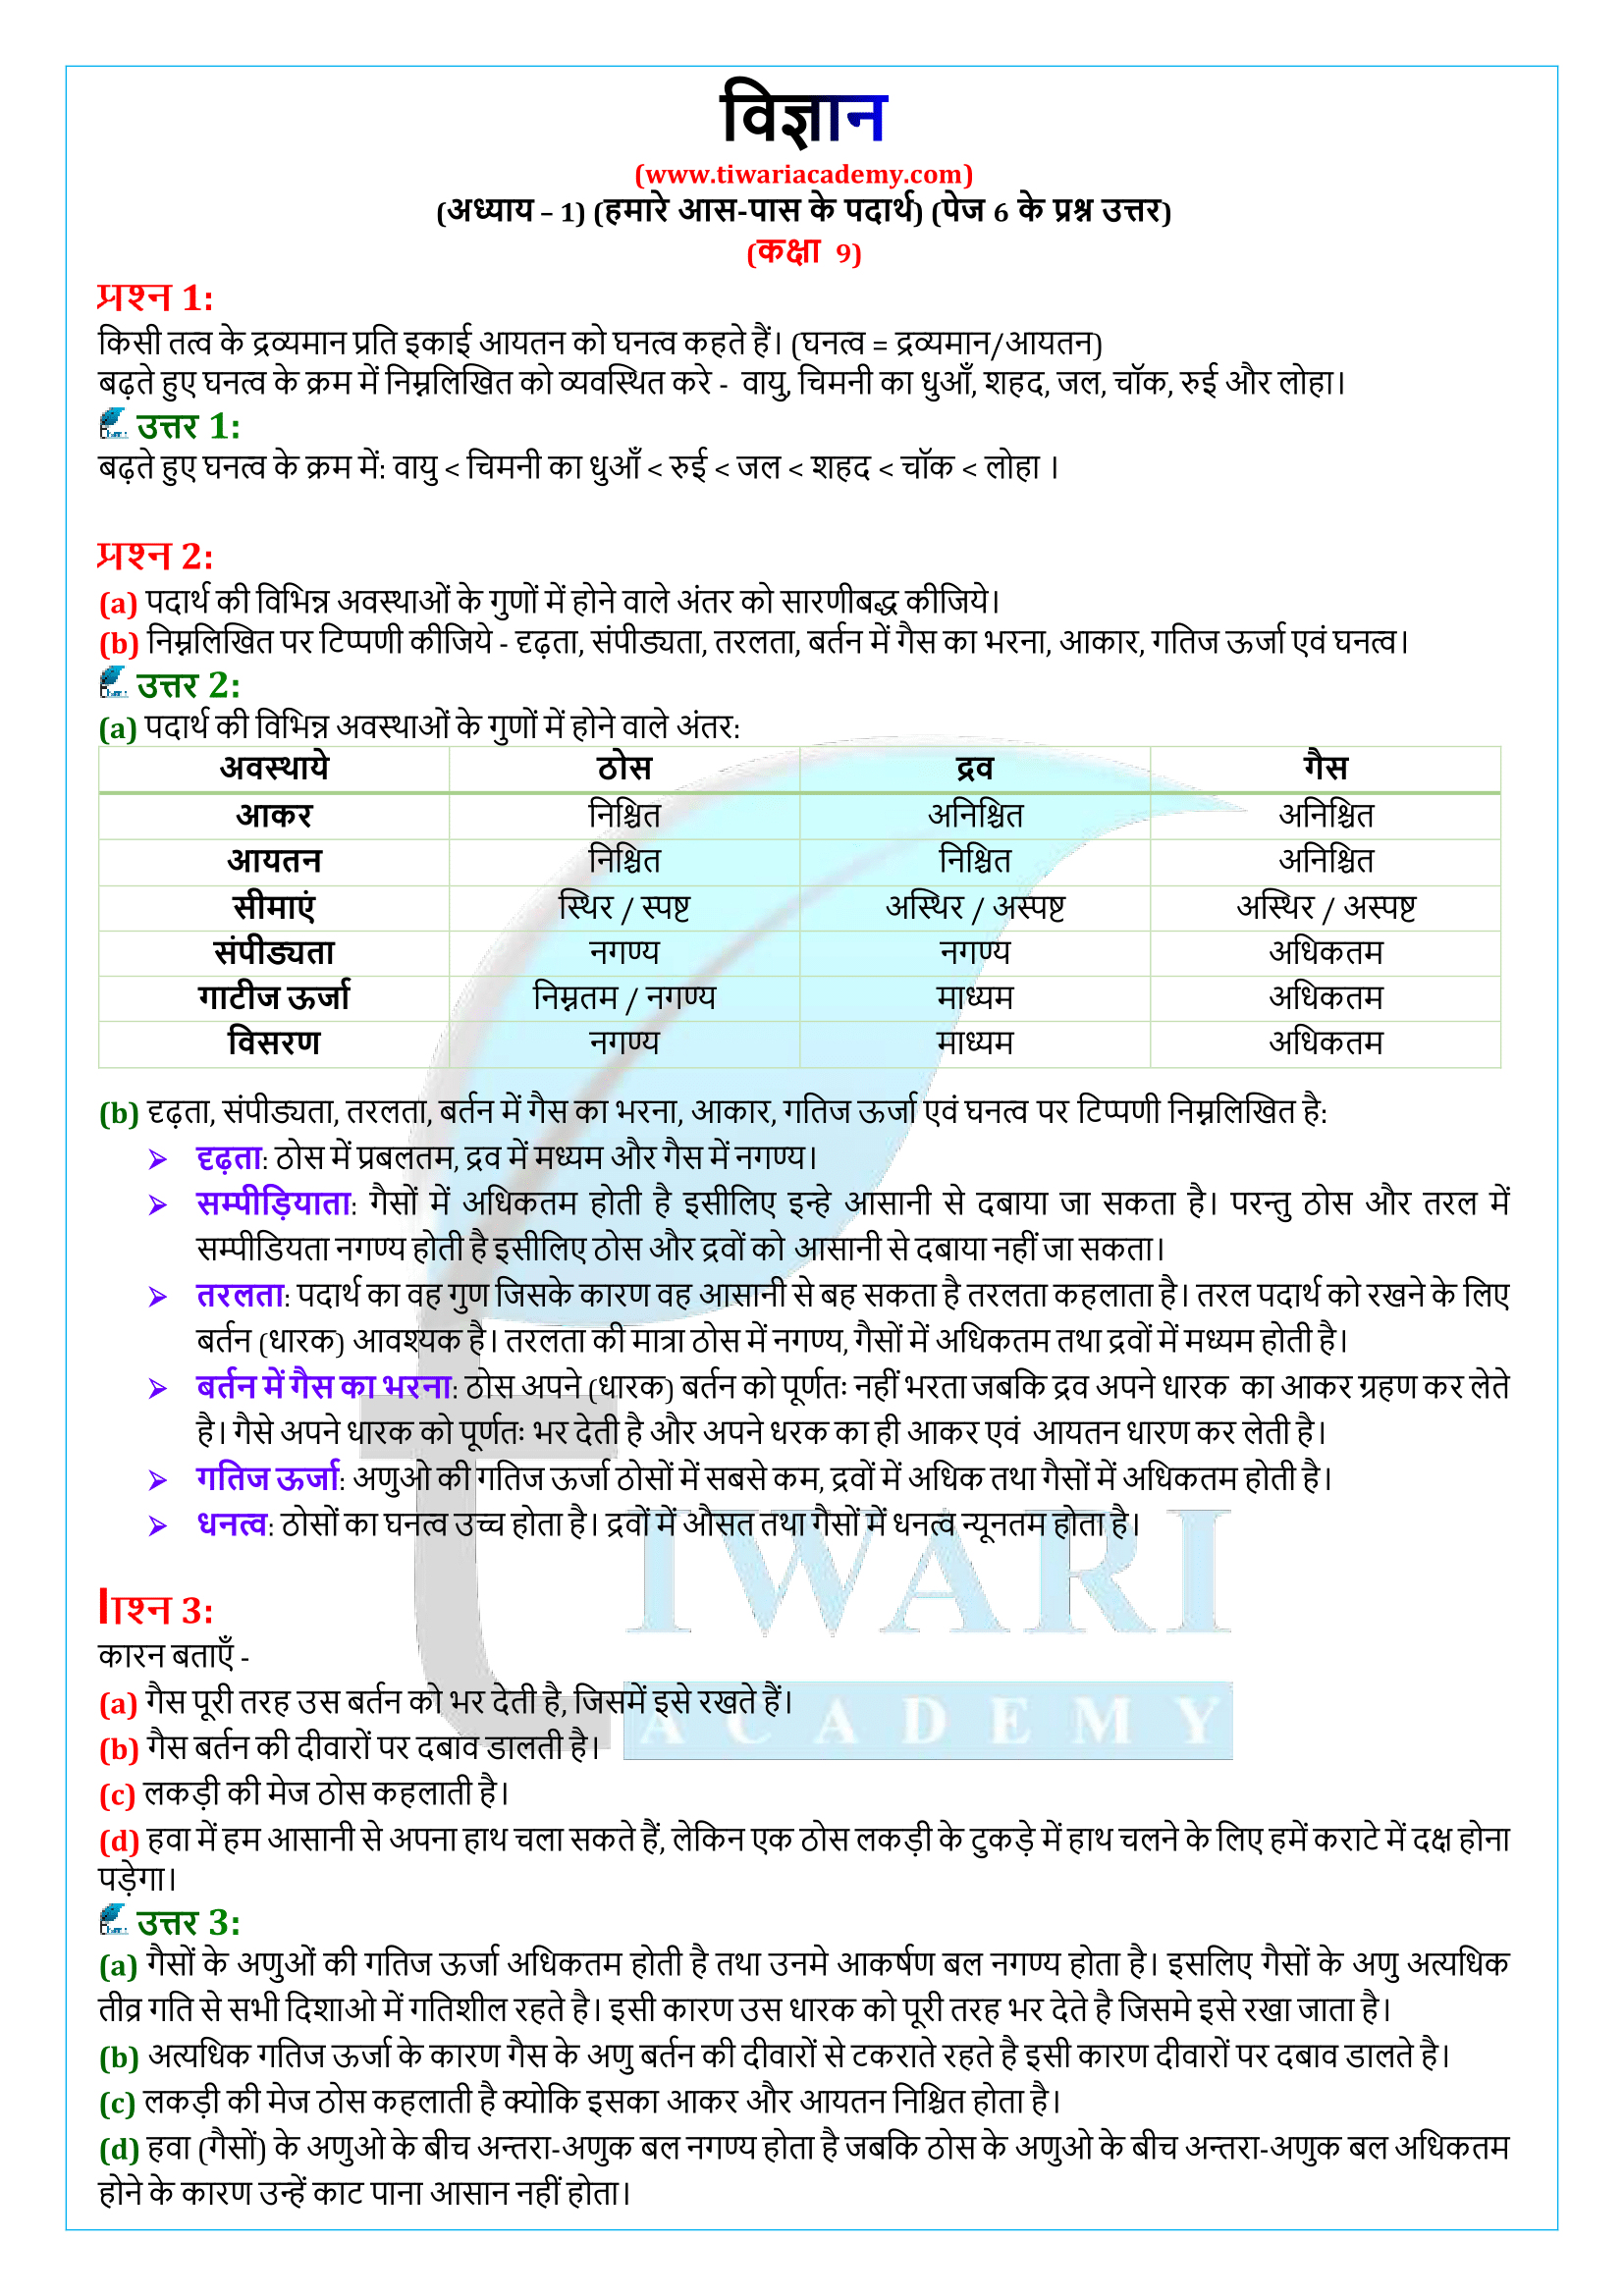 कक्षा 9 विज्ञान पेज 6 के प्रश्न उत्तर